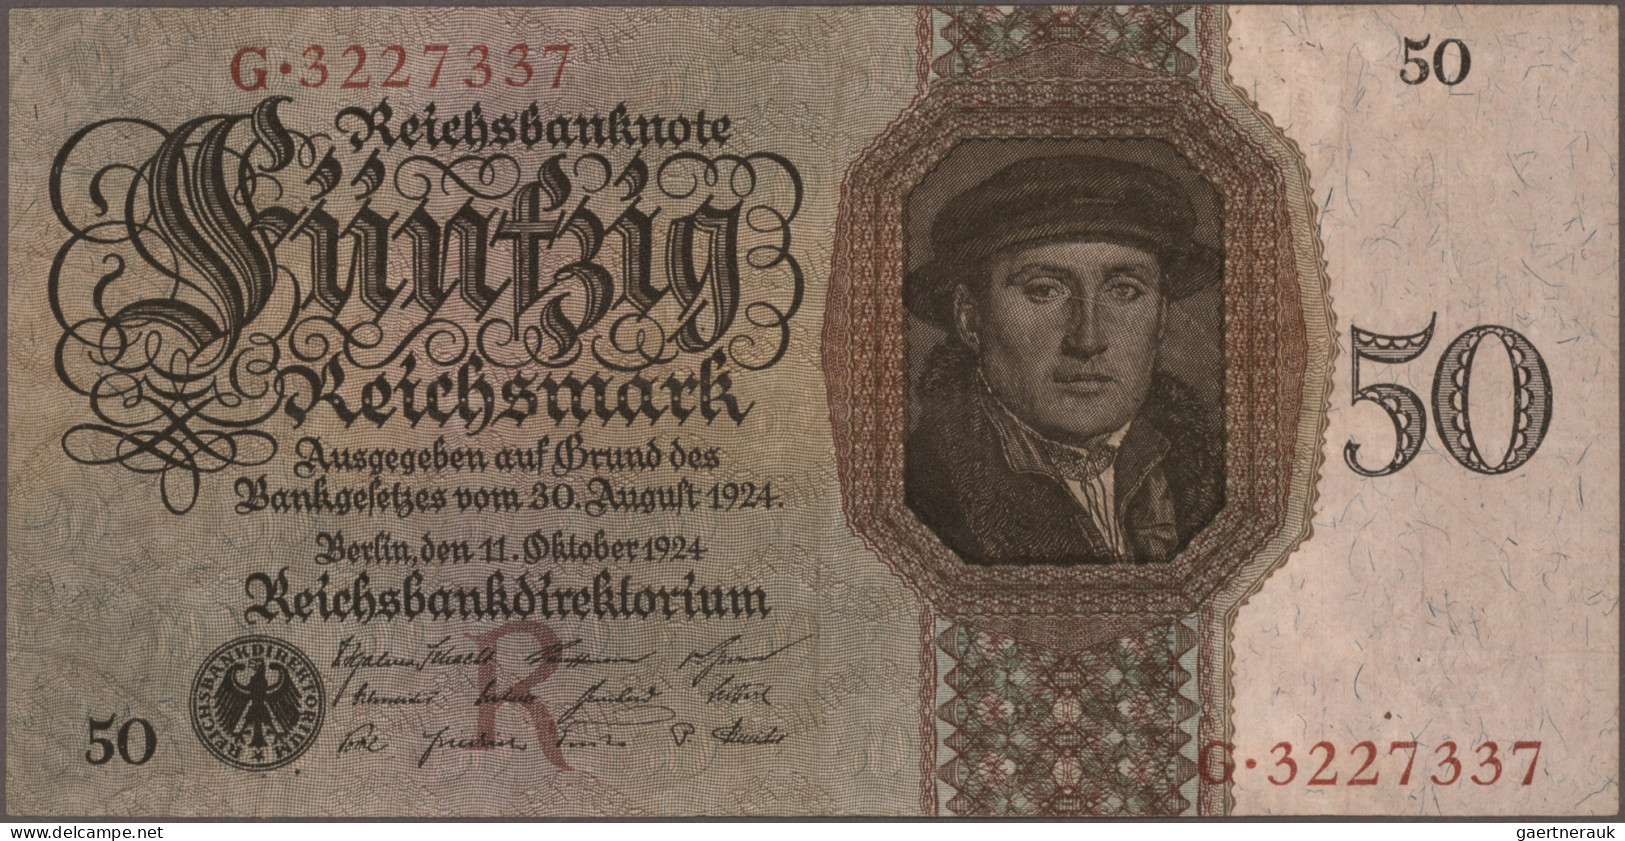 Deutschland - Deutsches Reich bis 1945: Riesiges Konvolut mit ca. 860 Banknoten